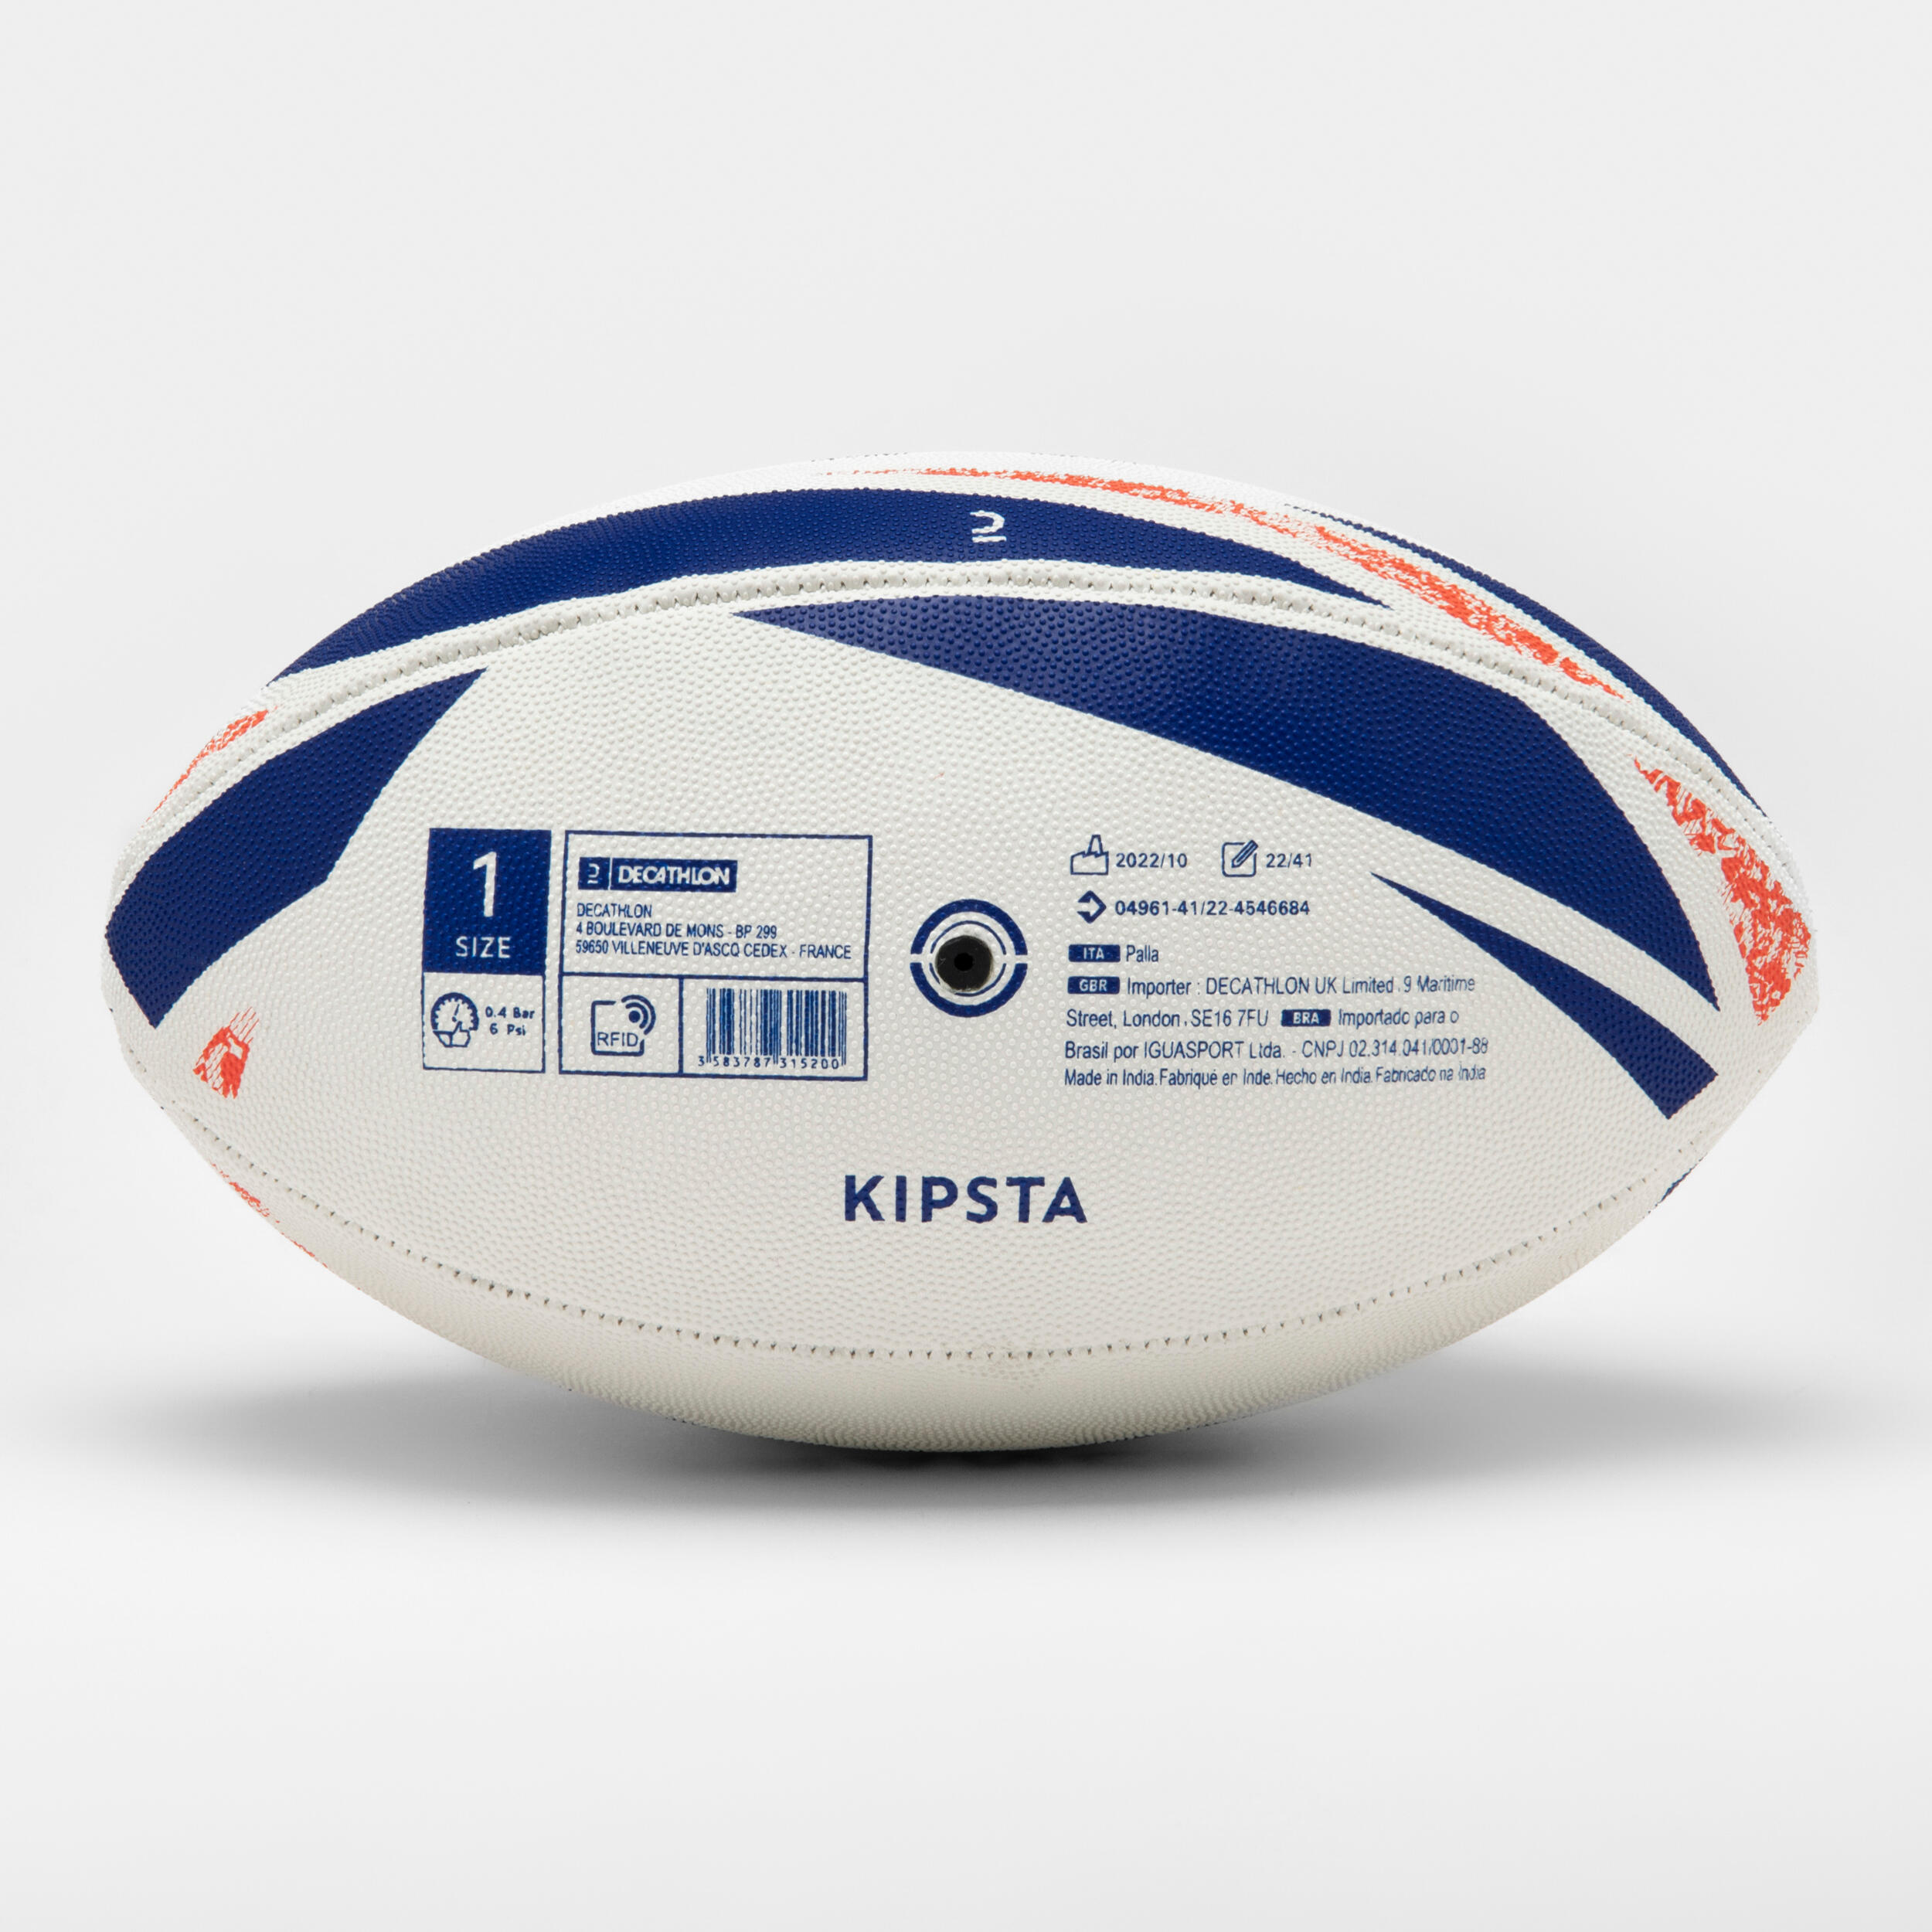 Rugby Ball R100 RWC Midi Size 1 - France 2/6